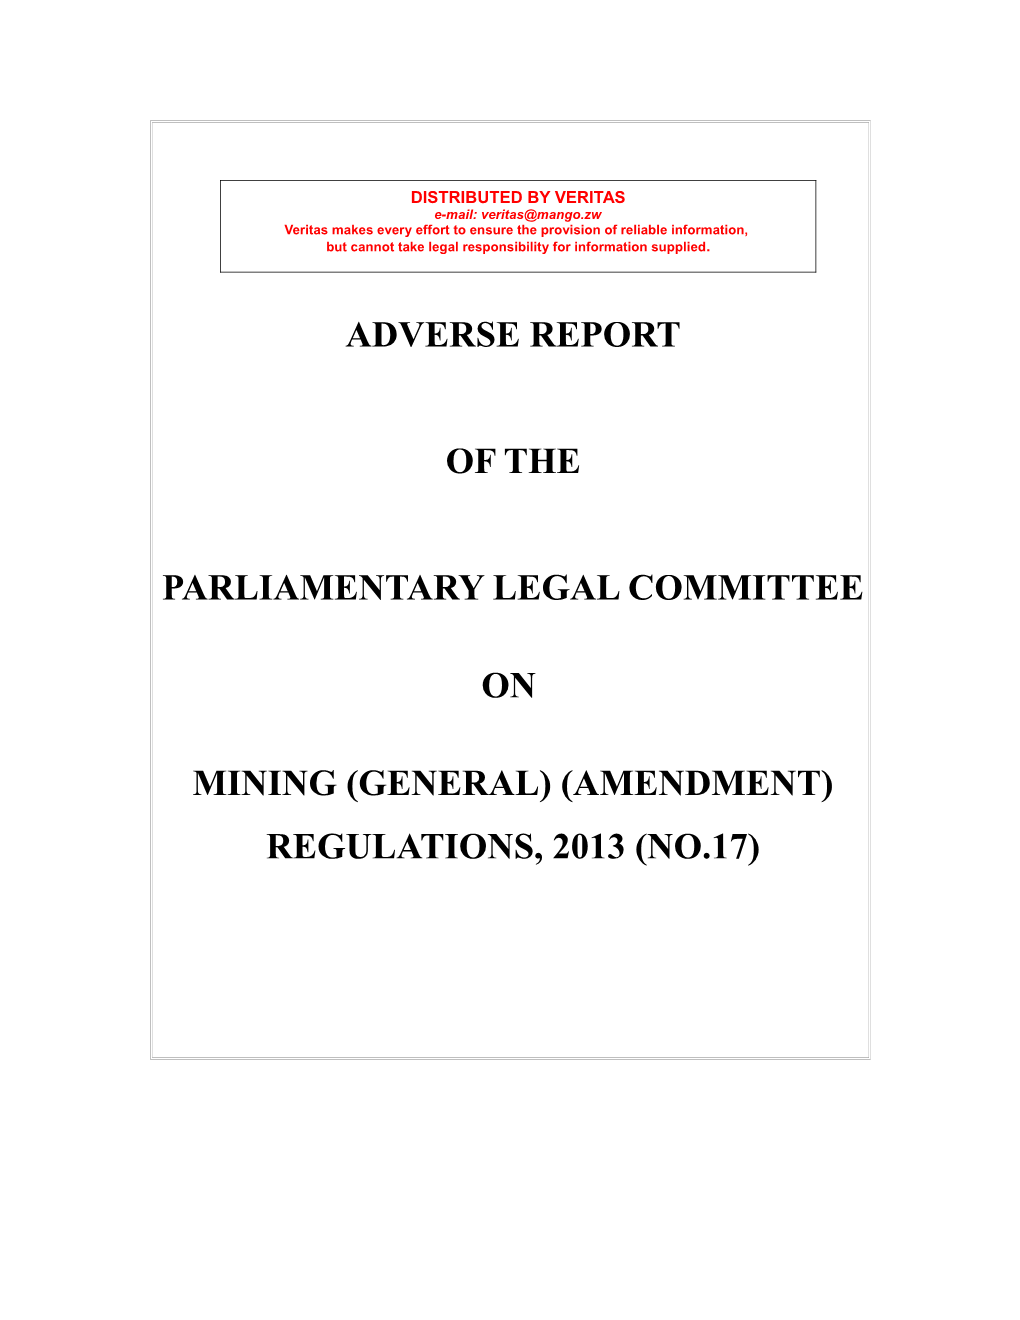 Mining (General) (Amendment) Regulations, 2013 (No.17)